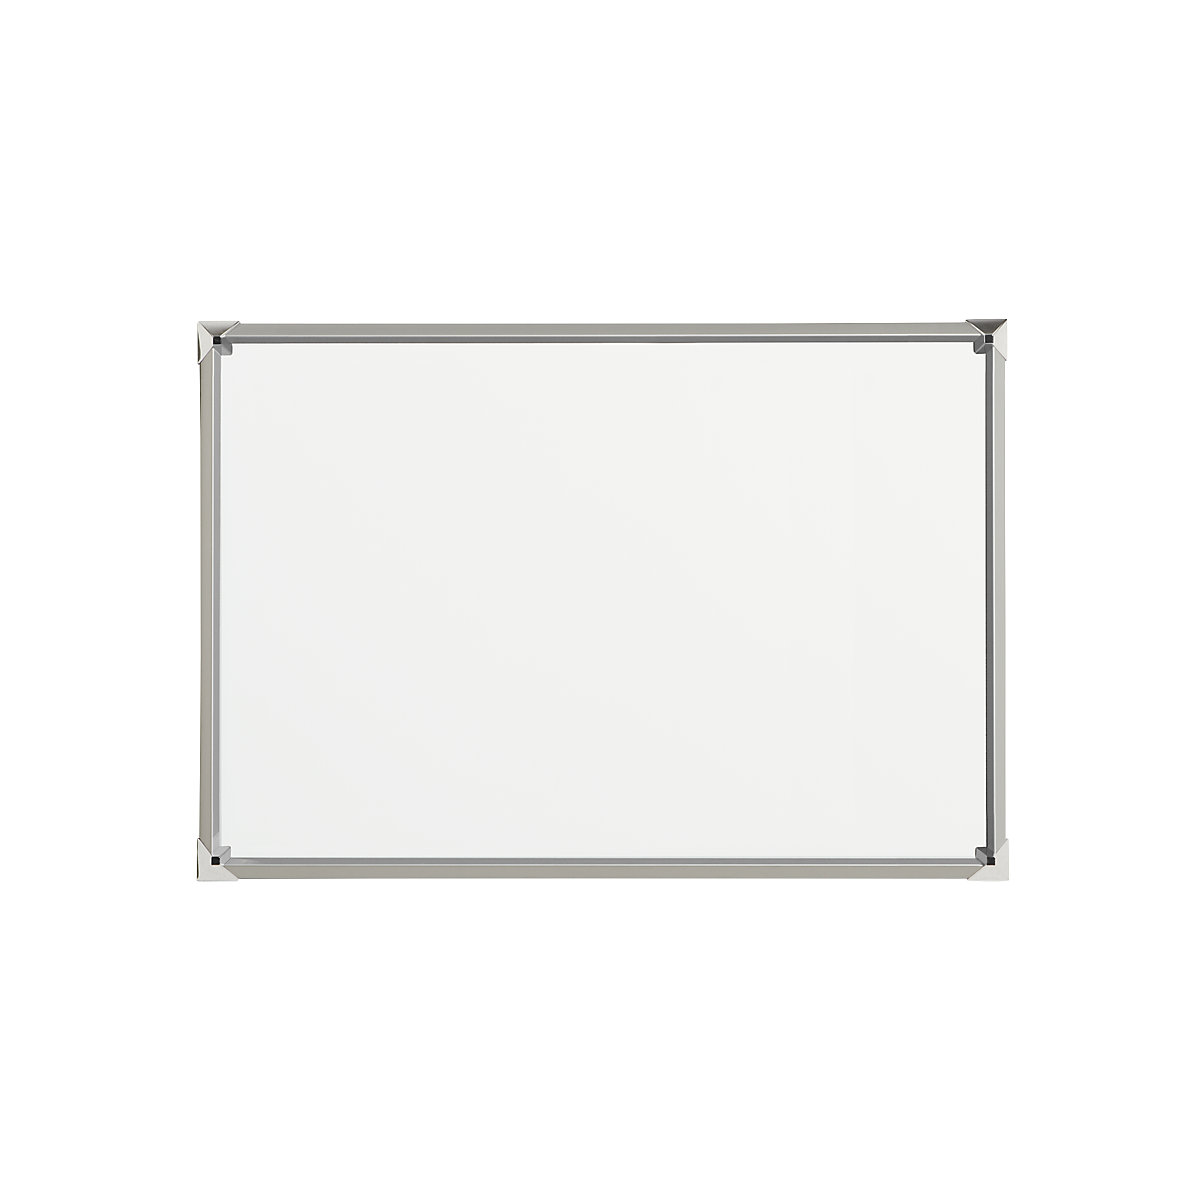 EUROKRAFTpro – Tablica biała z designerską ramą, blacha stalowa, emaliowana, szer. x wys. 900 x 600 mm, rama srebrna